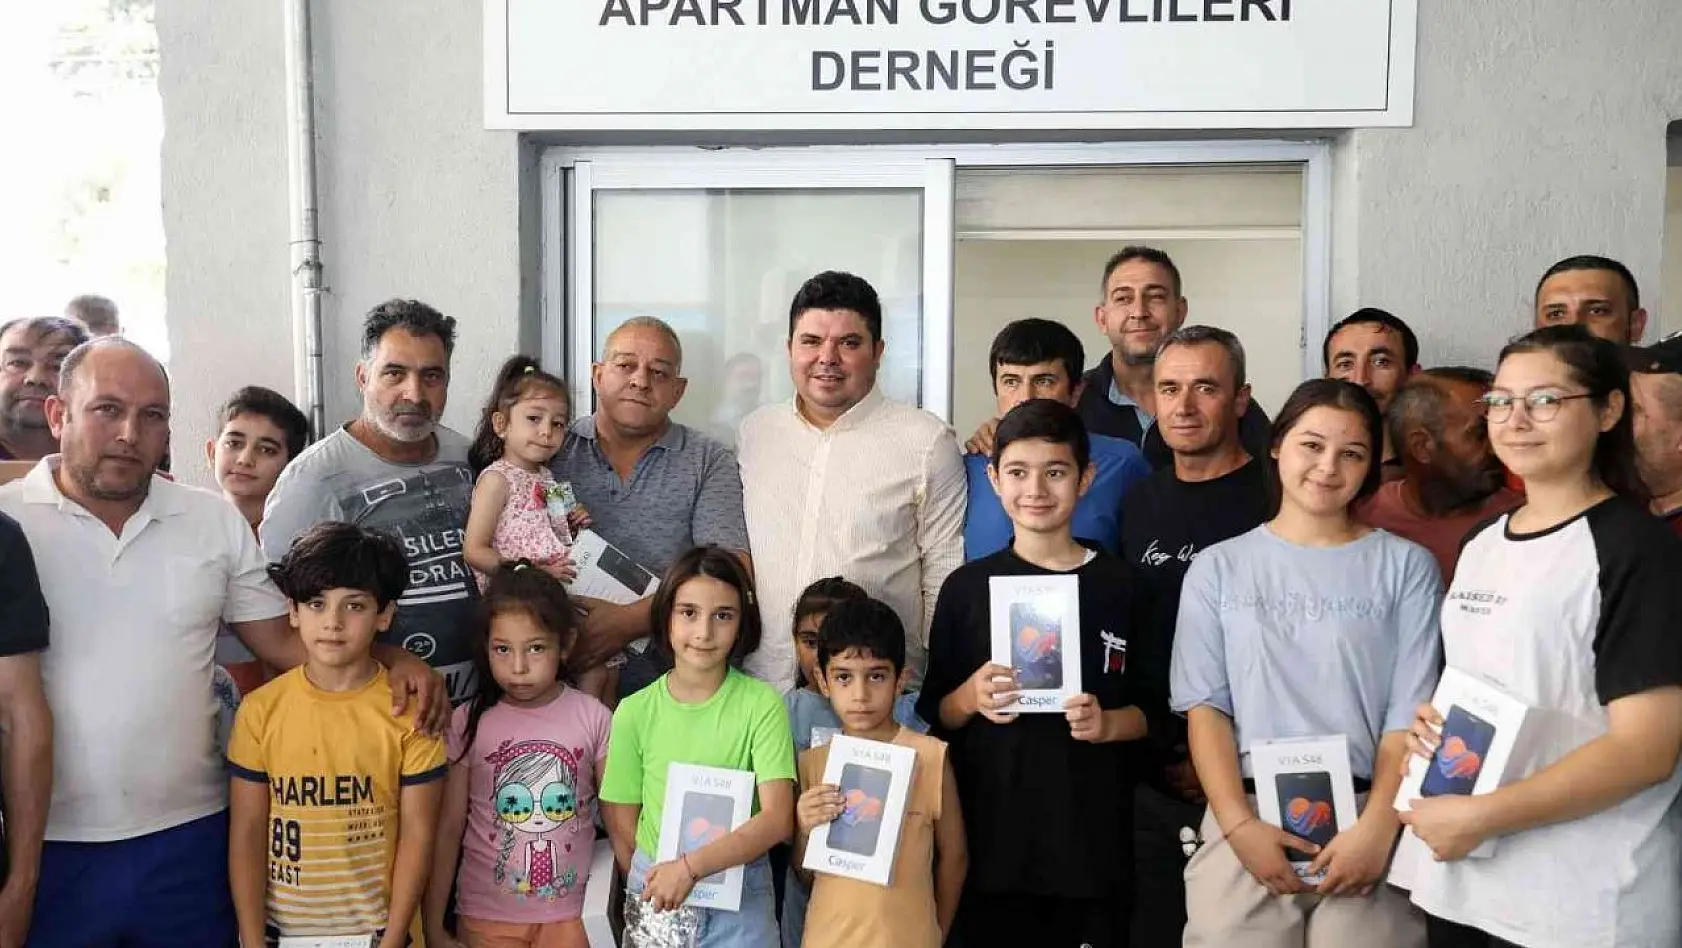 Başkan Kılıç'tan apartman görevlilerinin çocuklarına sürpriz